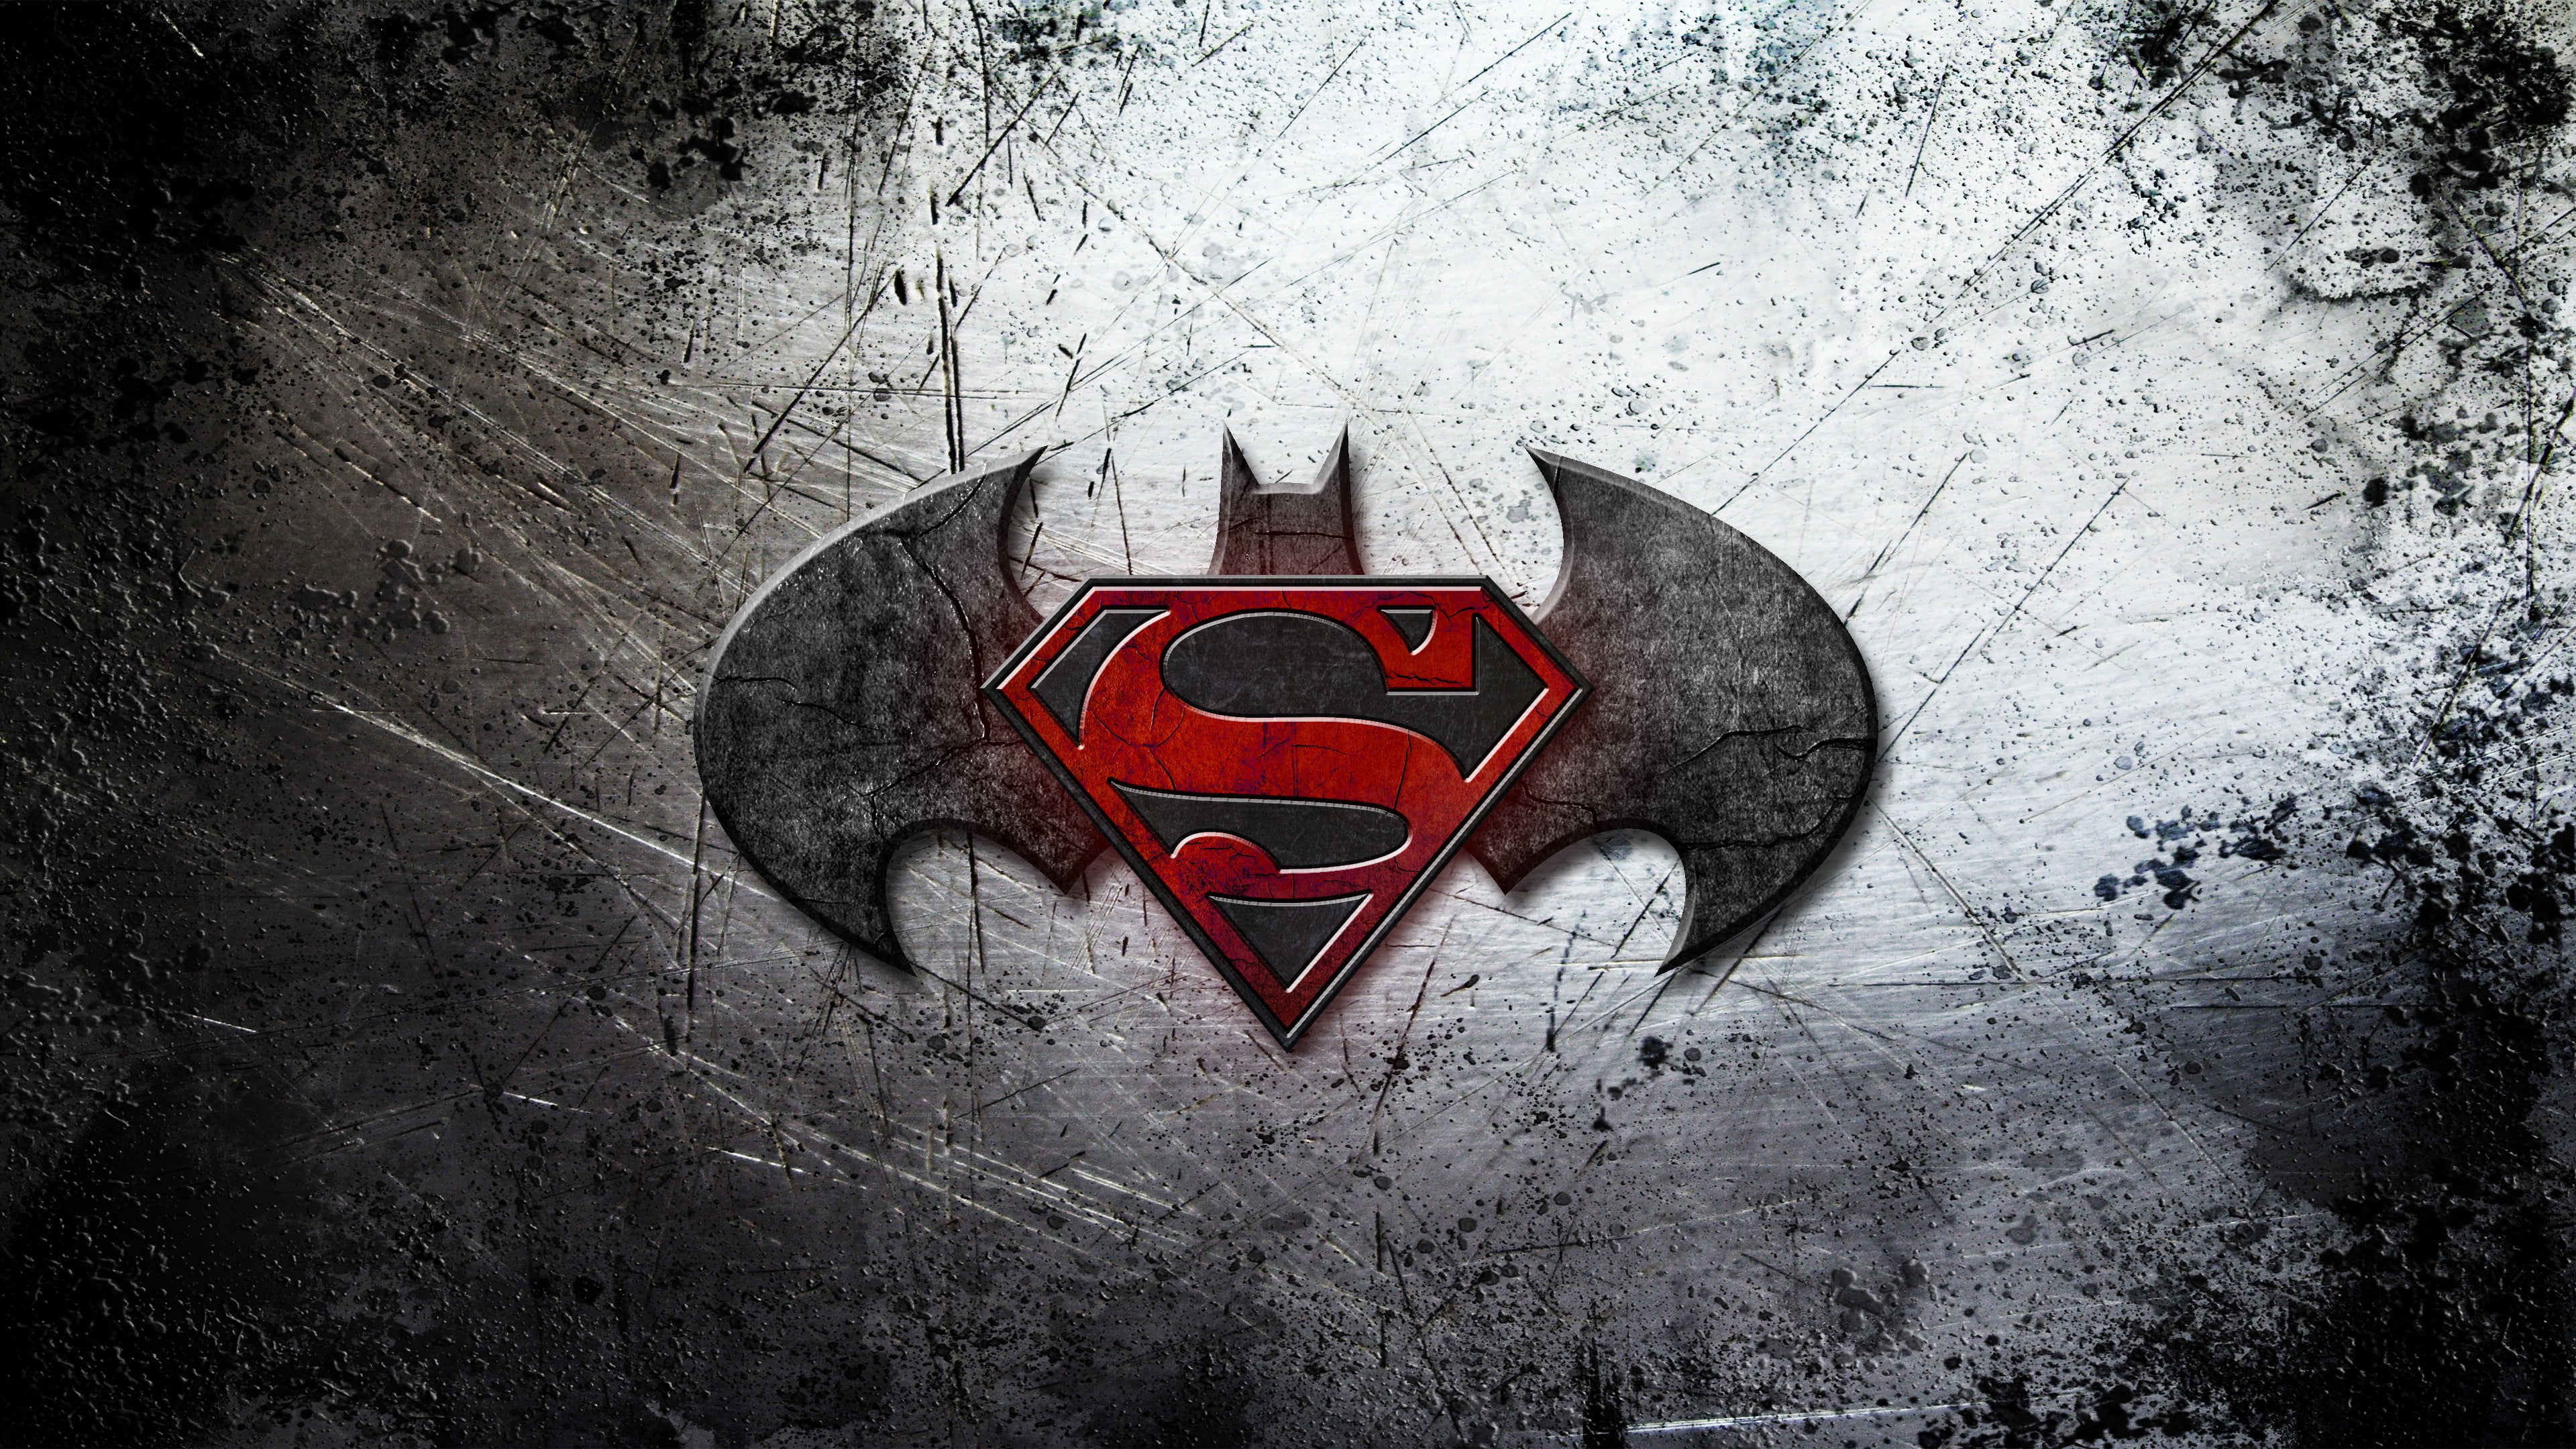 Batman and Superman logo digital wallpaper, movies, Batman v Superman: Dawn of Justice